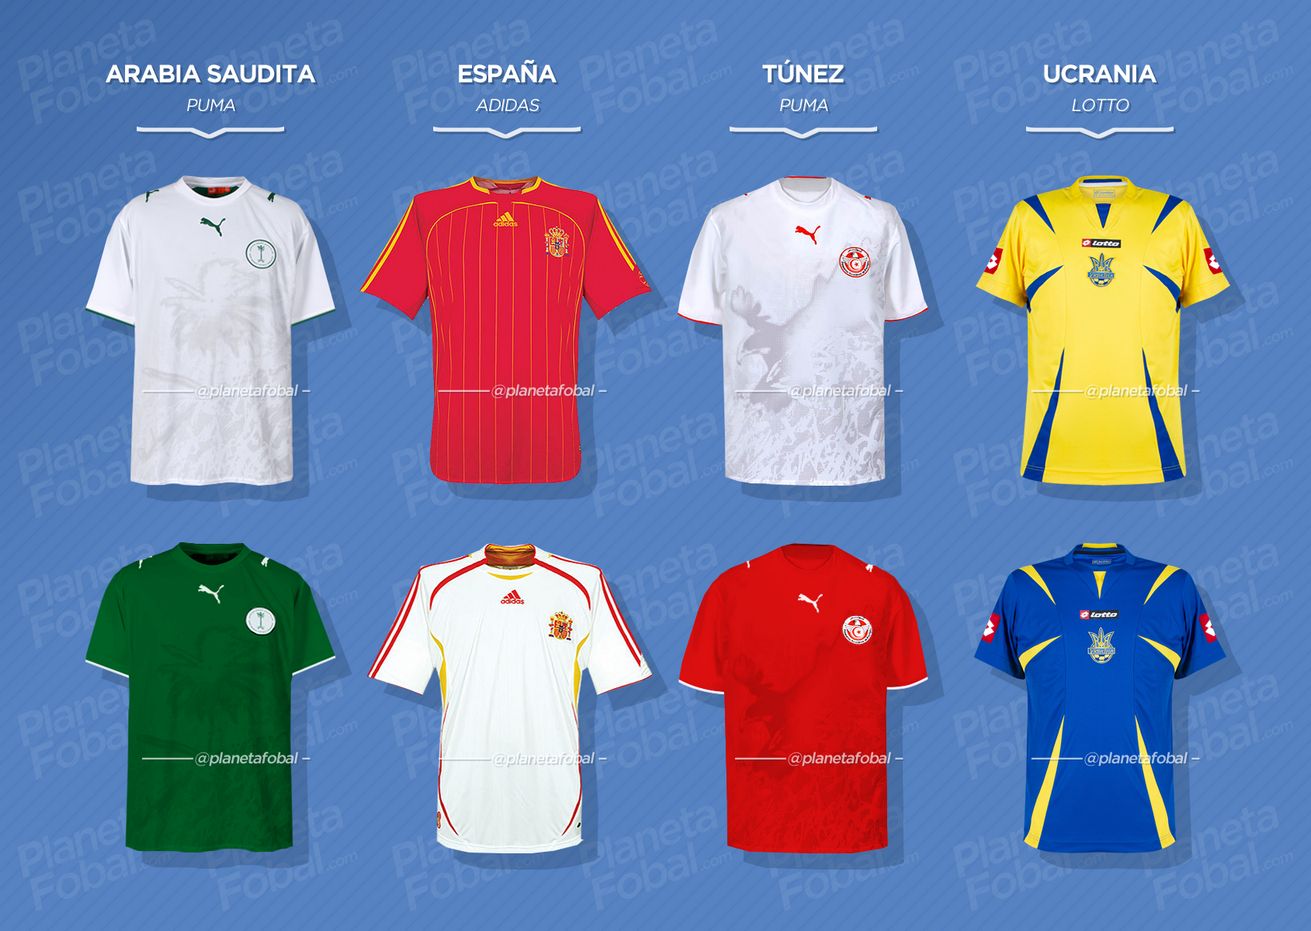 Grupo H | Camisetas del Mundial 2006